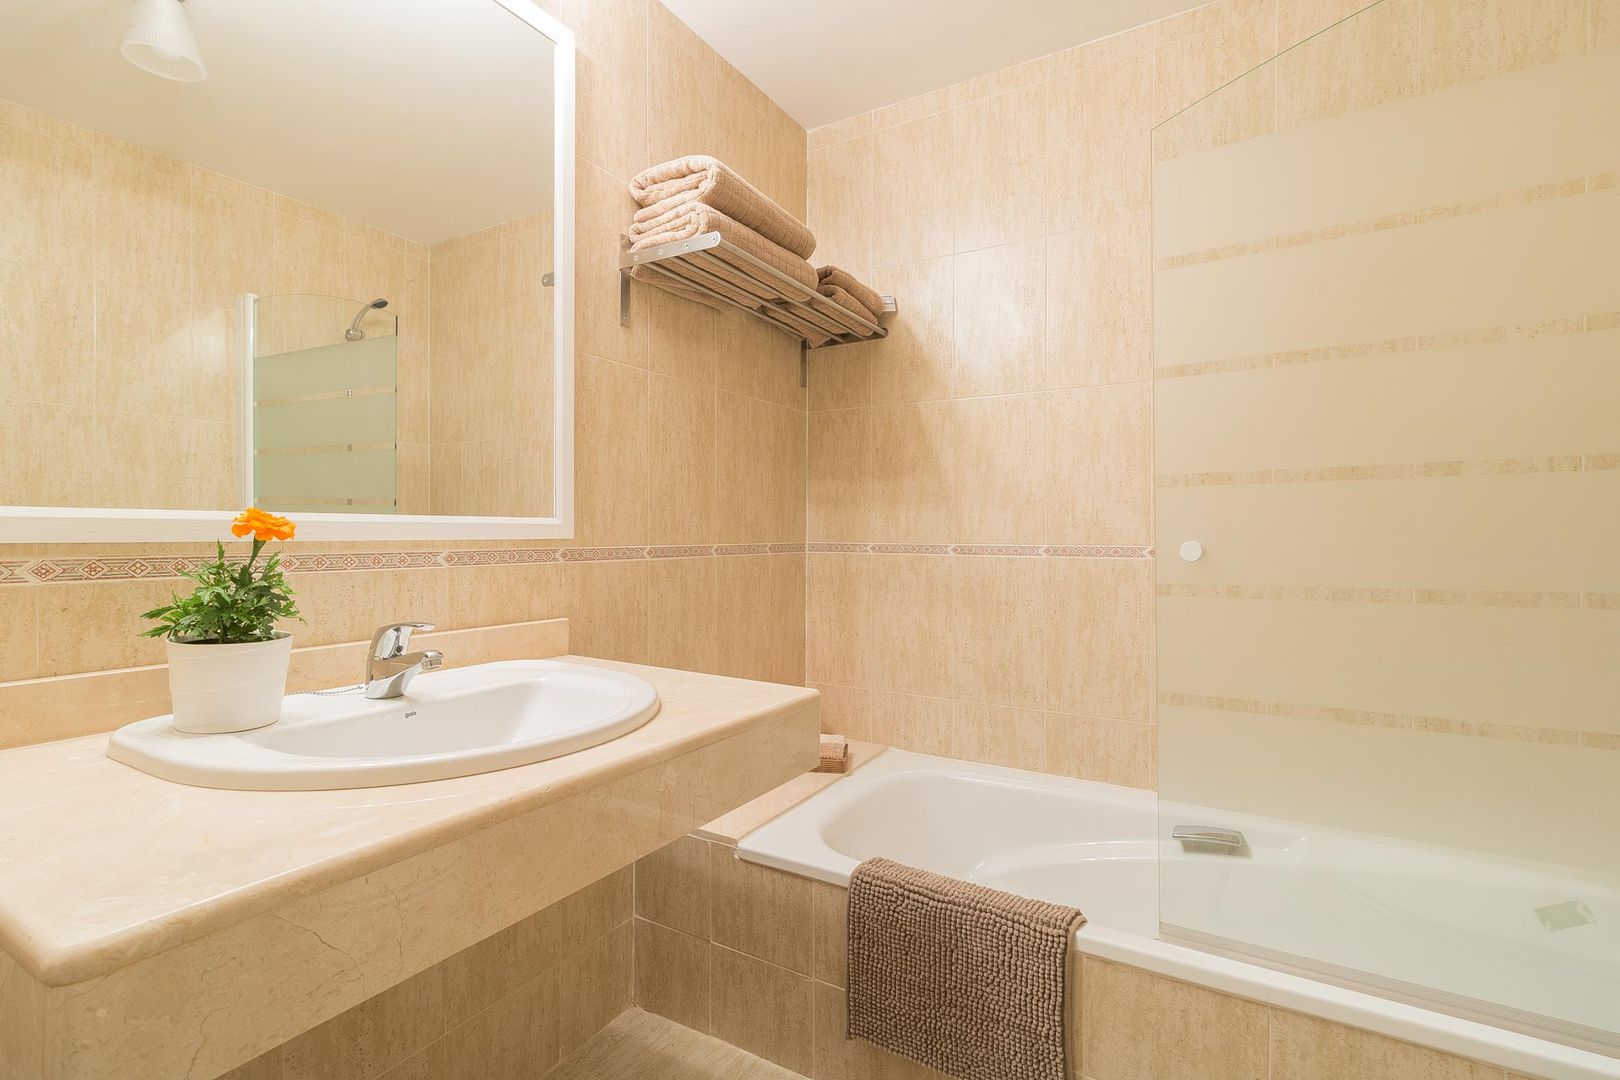 REPORTAJE FOTOGRÁFICO ALQUILER TURÍSTICO, Become a Home Become a Home Ванная комната в скандинавском стиле